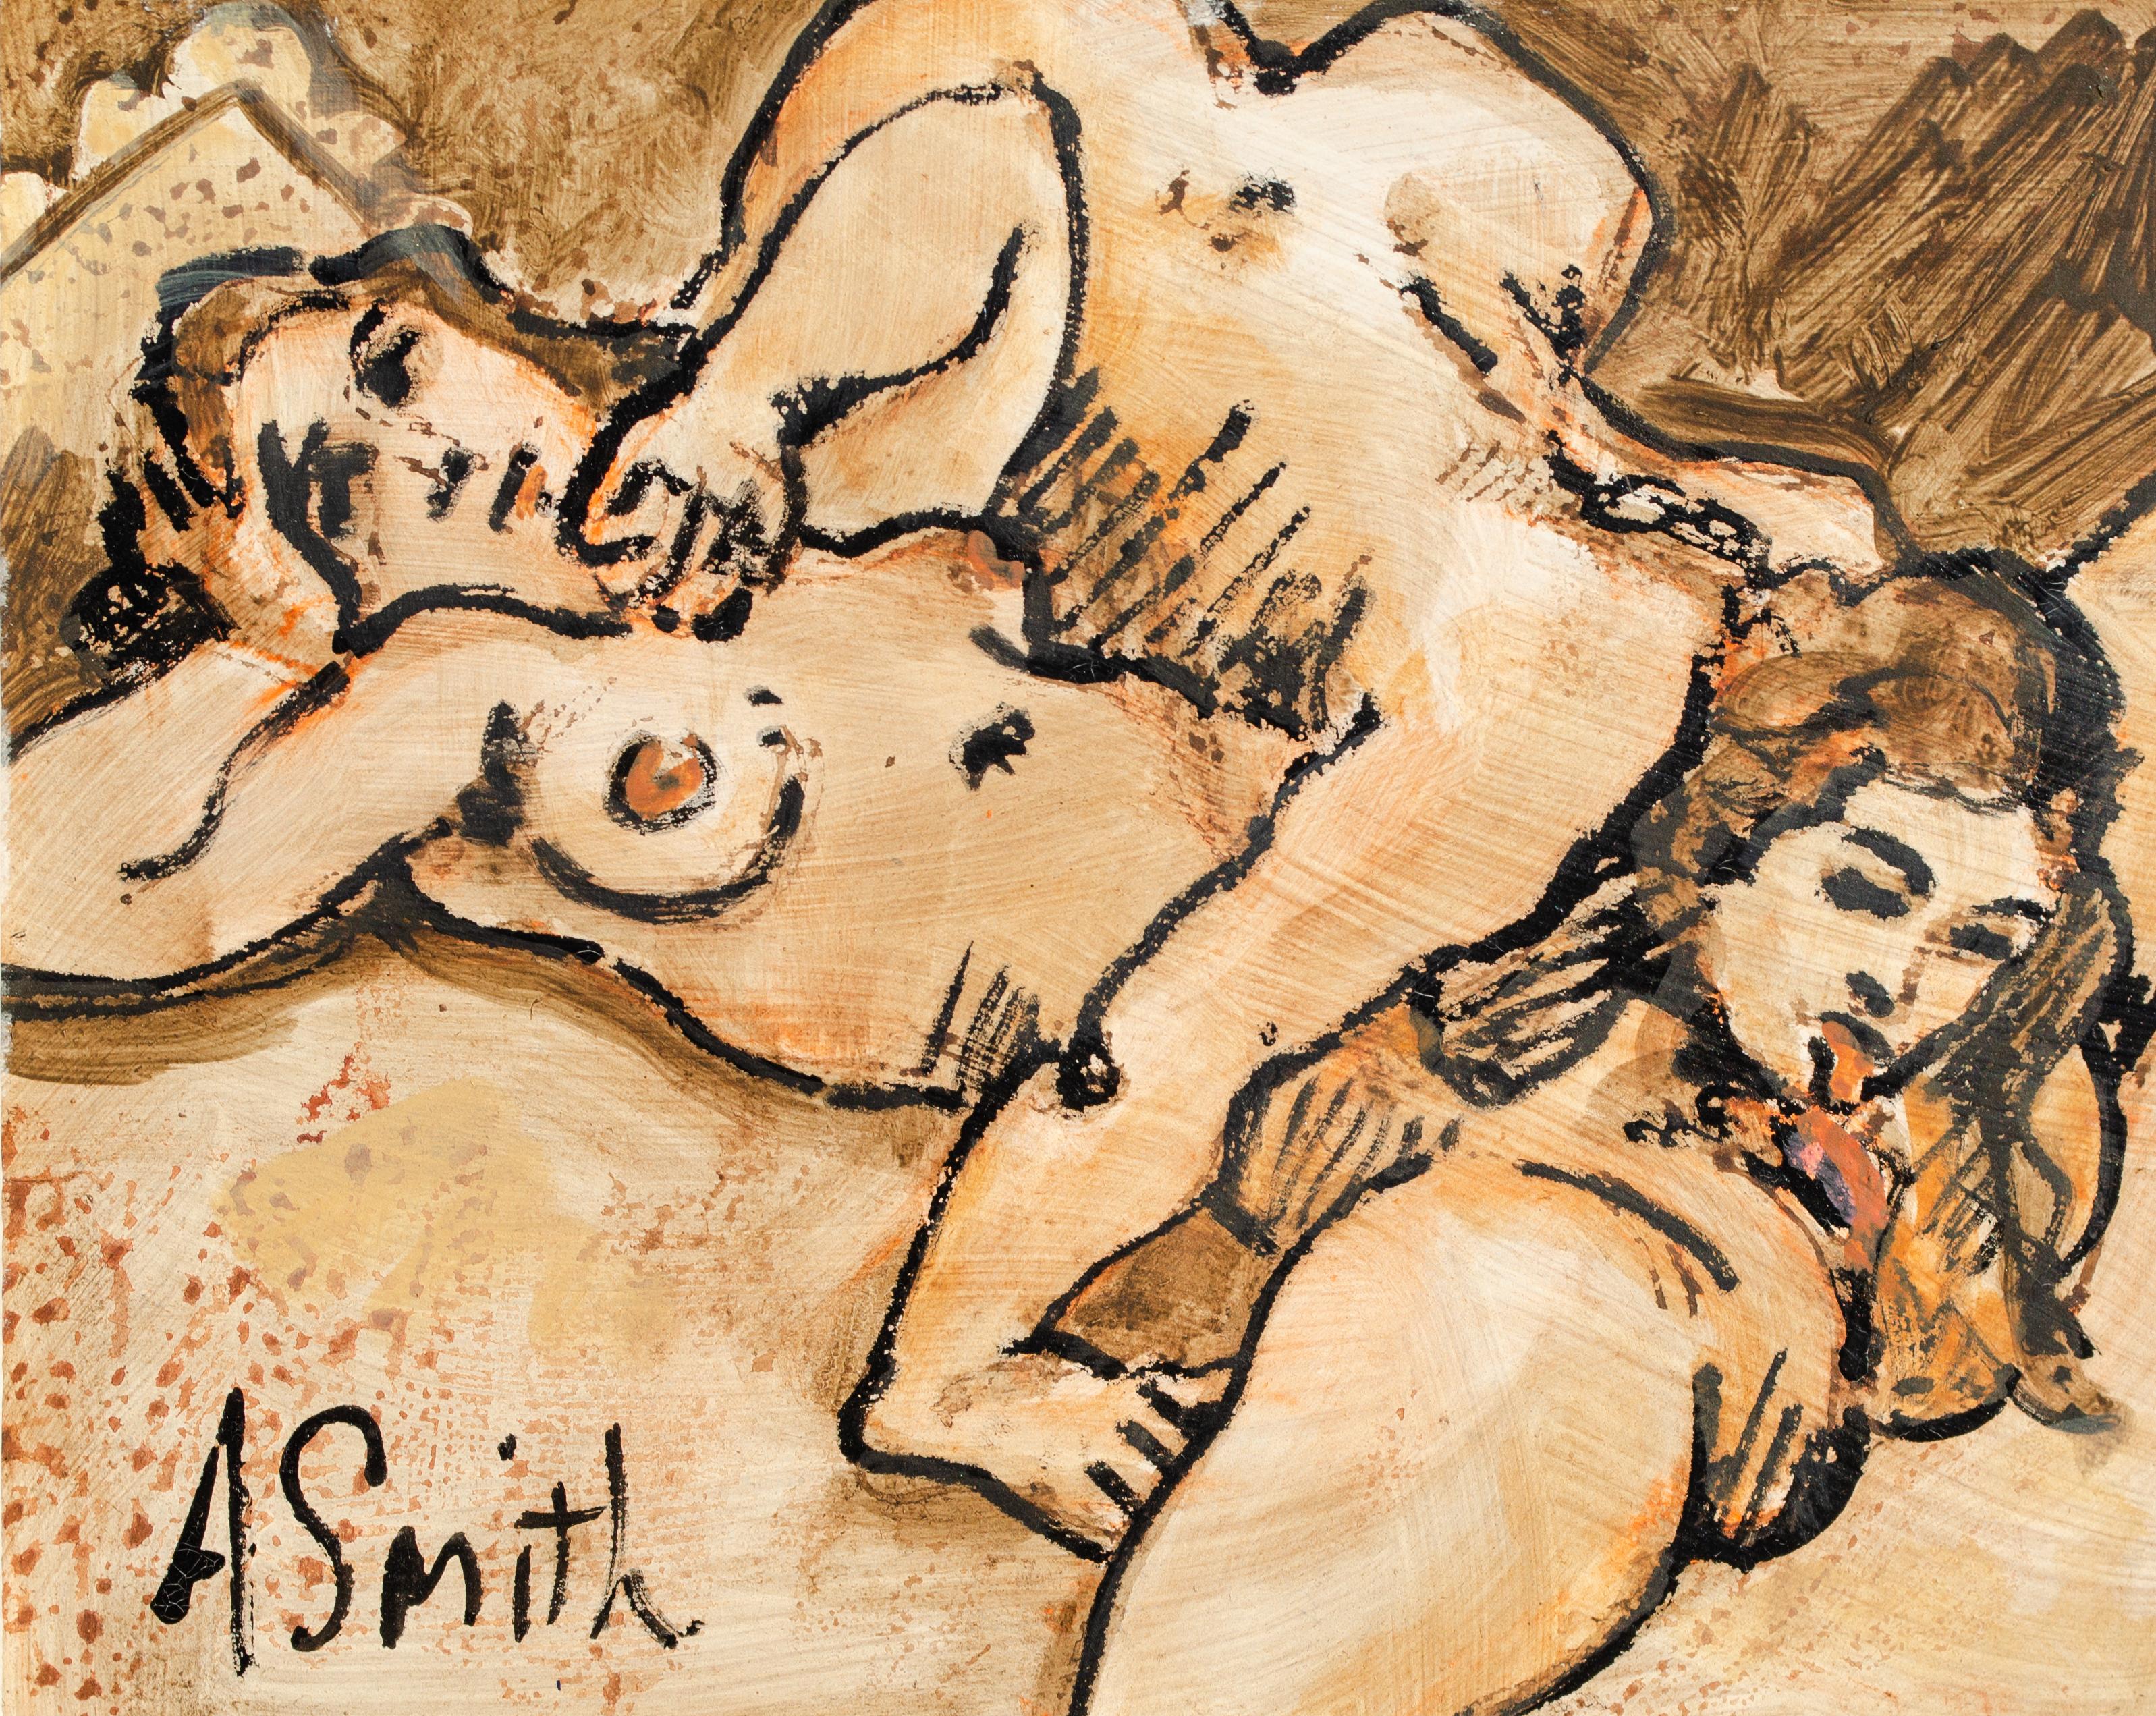 Modernistisches erotisches Gemälde von Arthur Smith